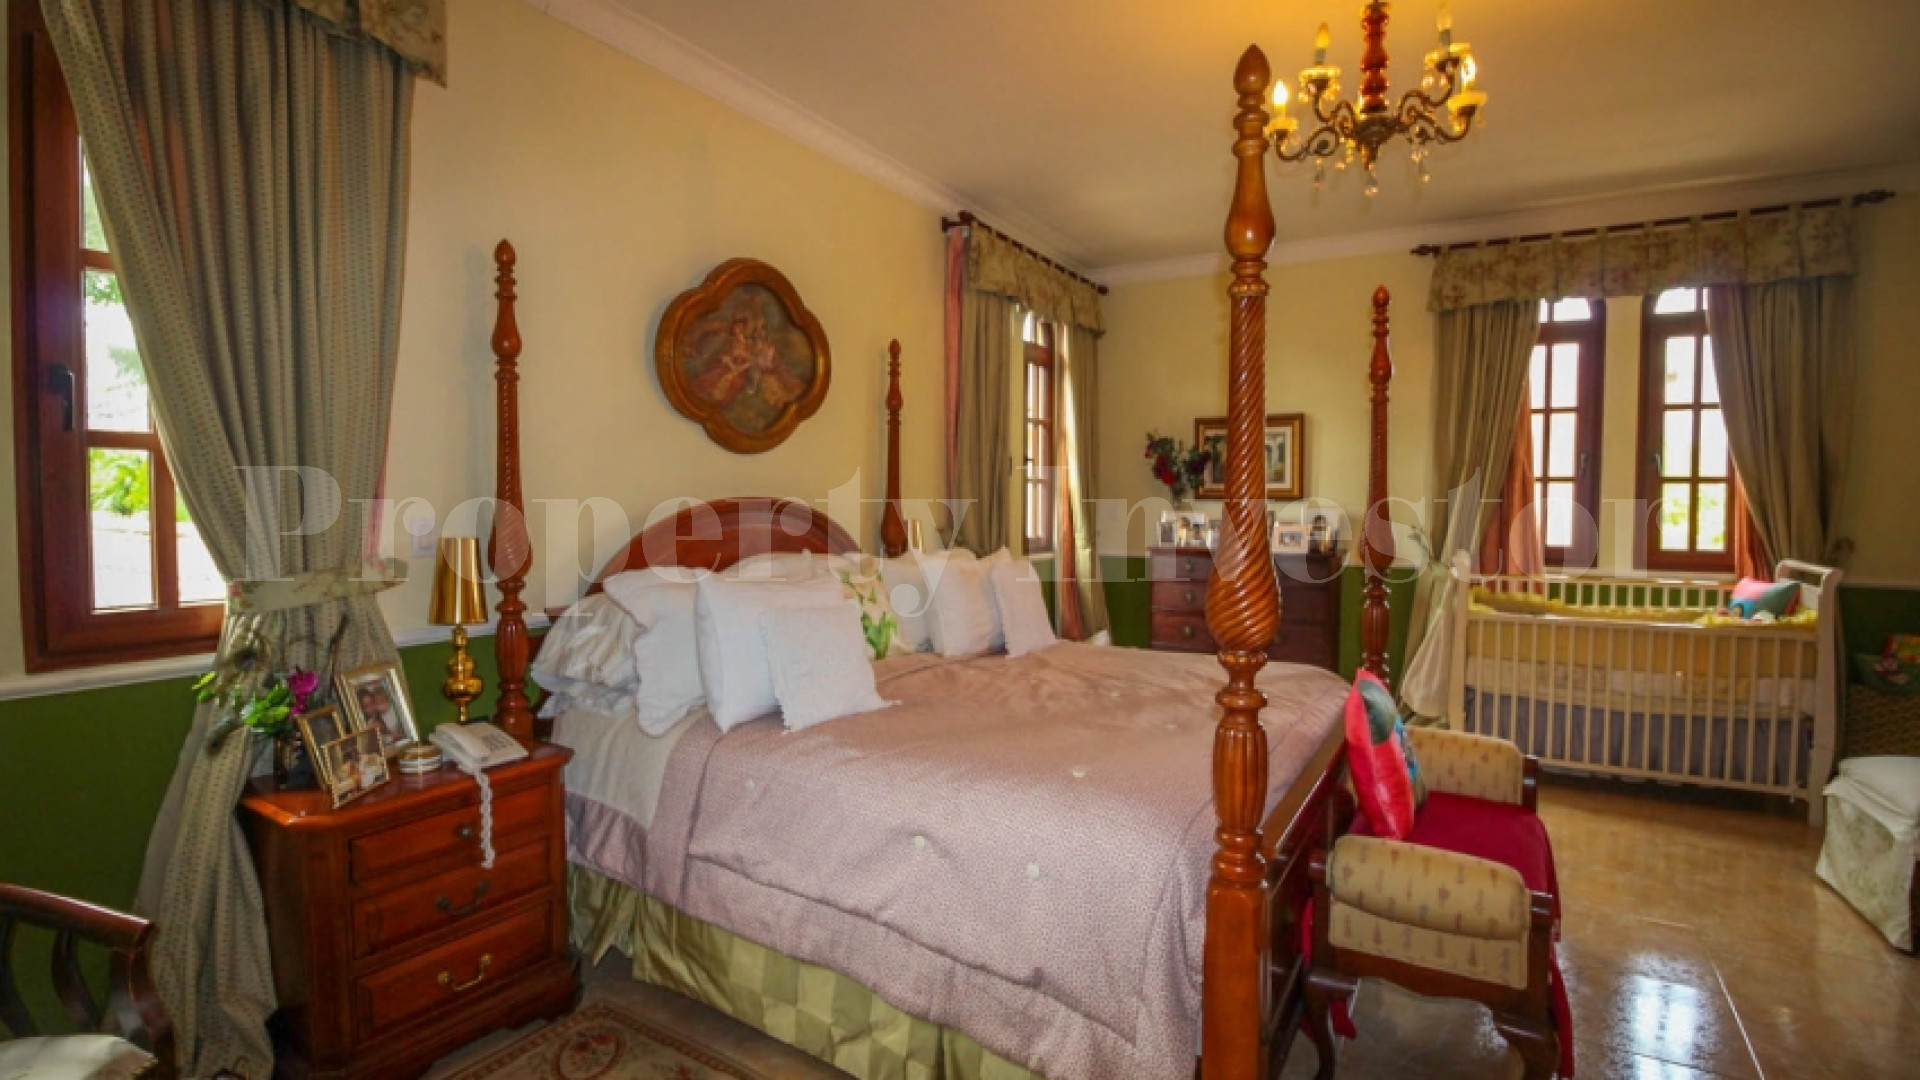 Traditional 7 Bedroom Hacienda Style Villa for Sale in Costa del Este, Panama City